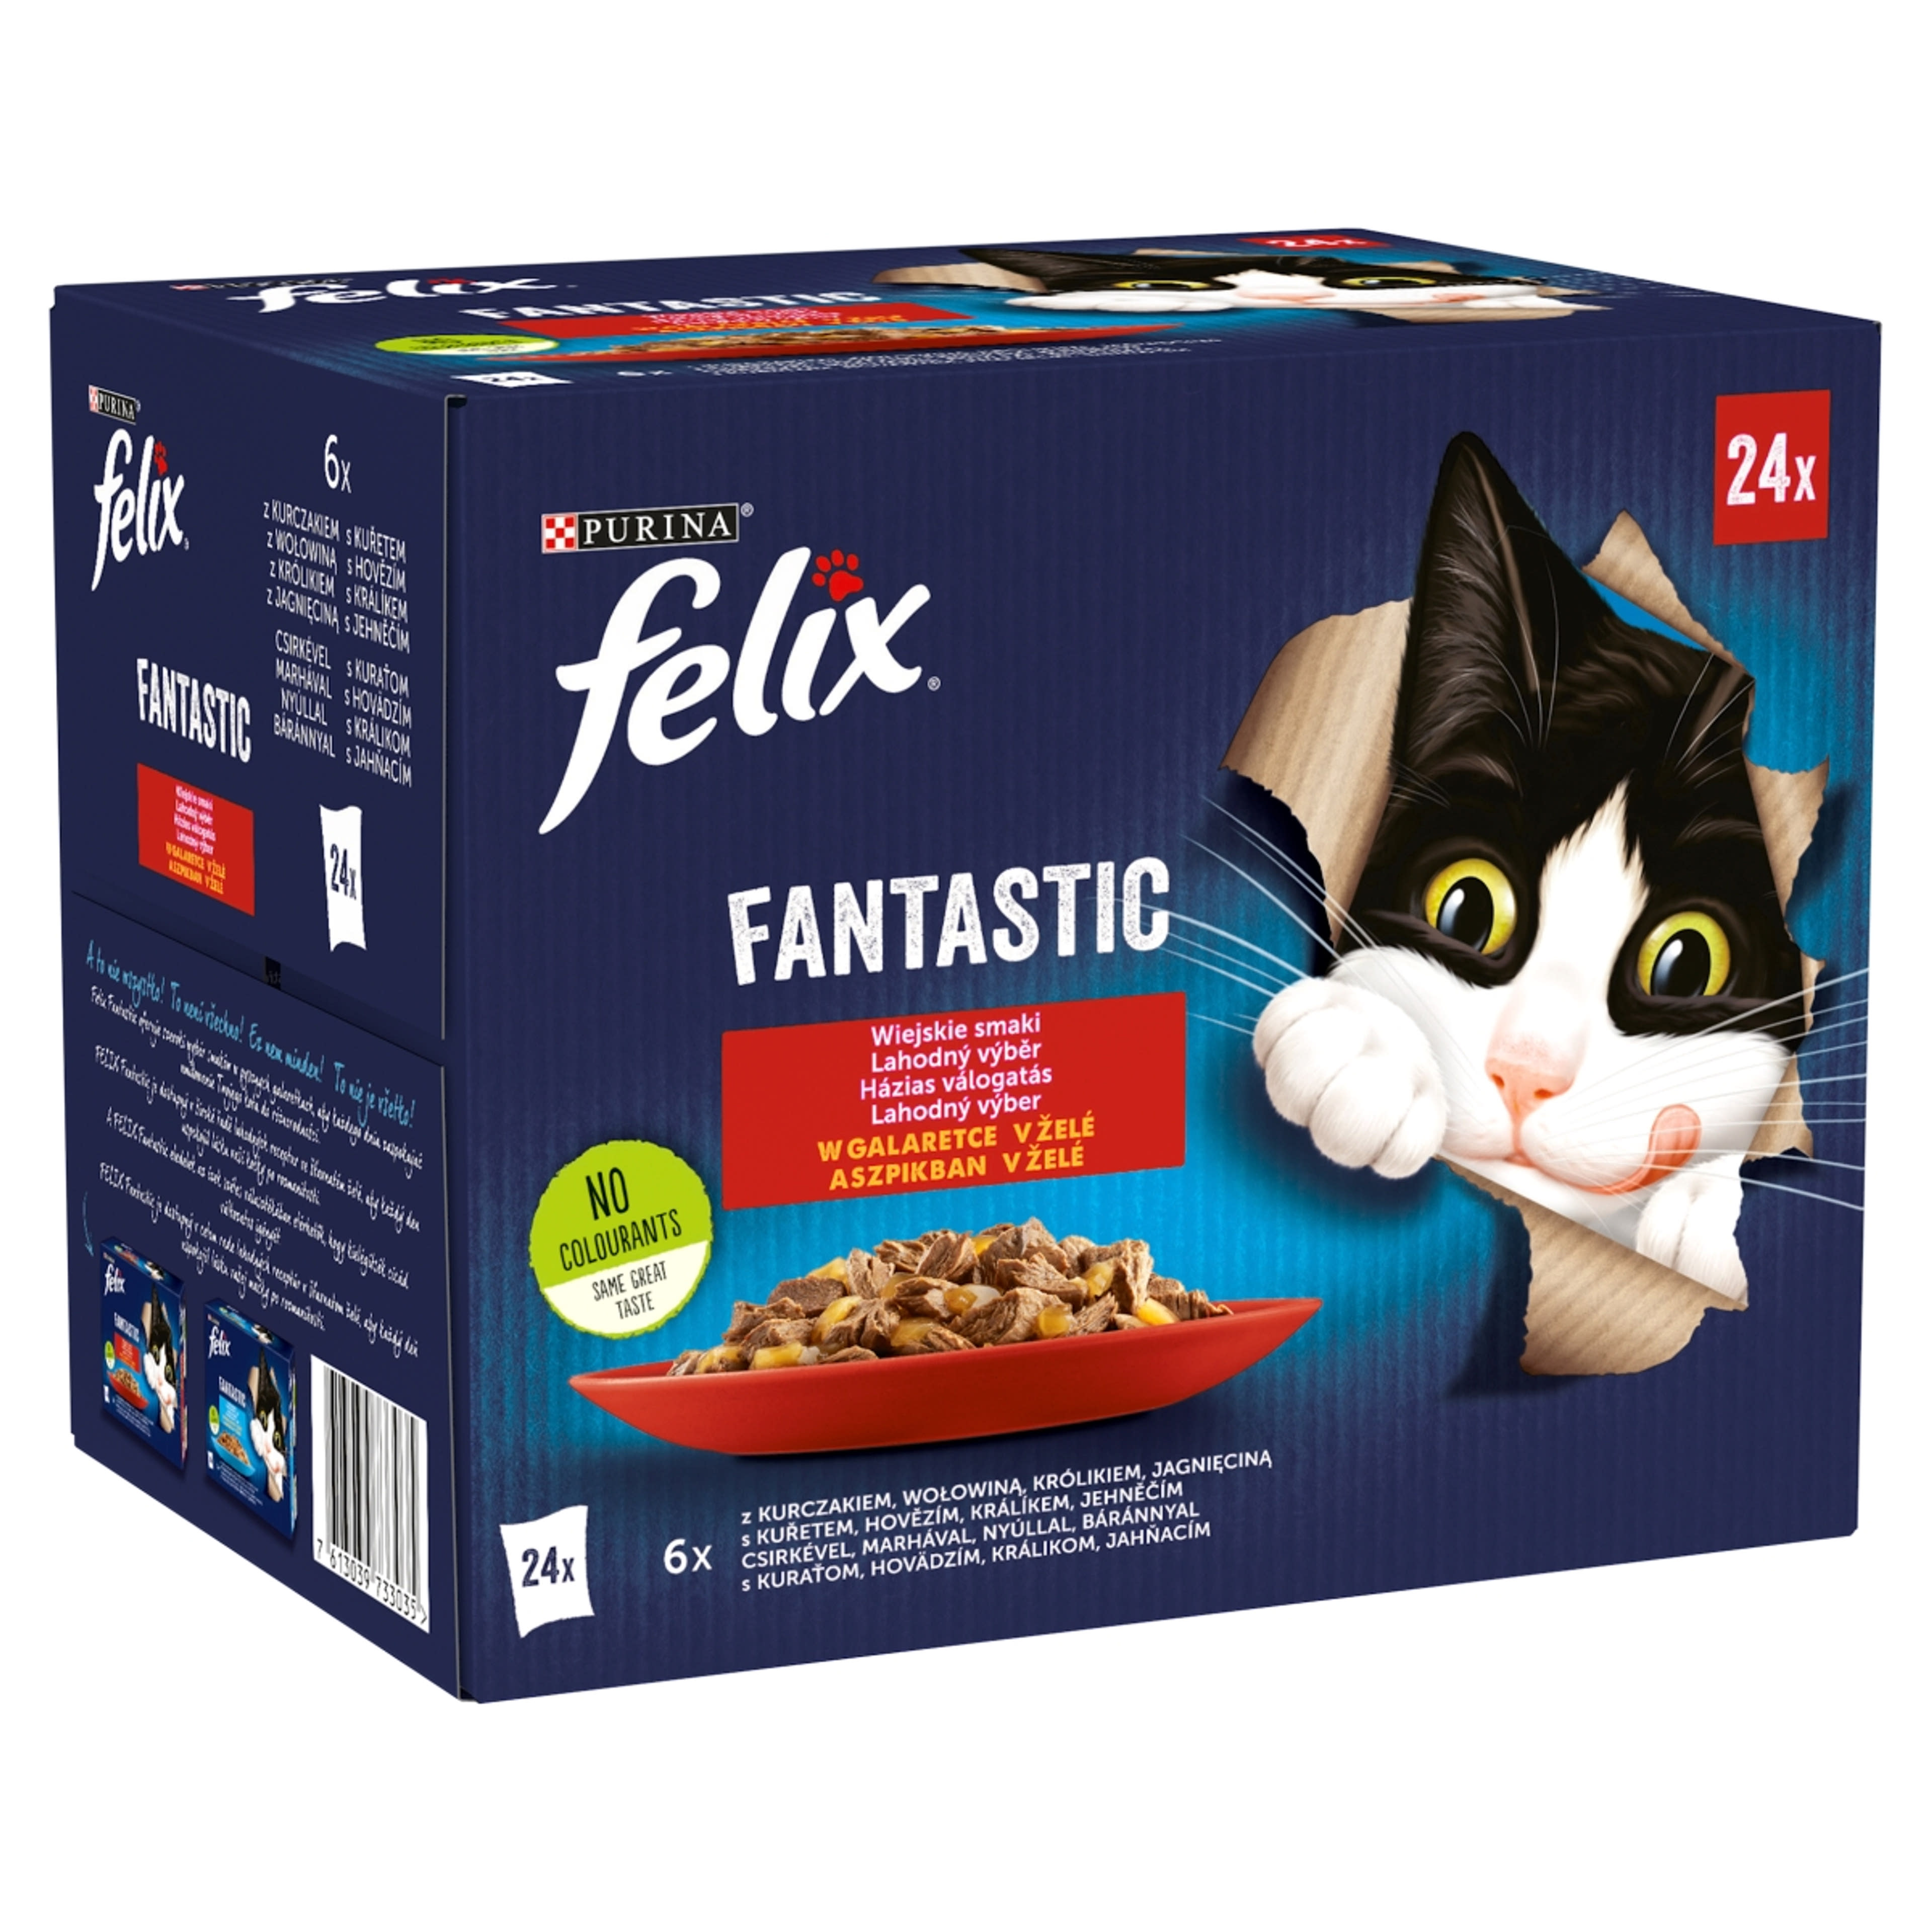 Felix fantastic alutasak macskáknak házias válogatás 24*85 g - 2040 g